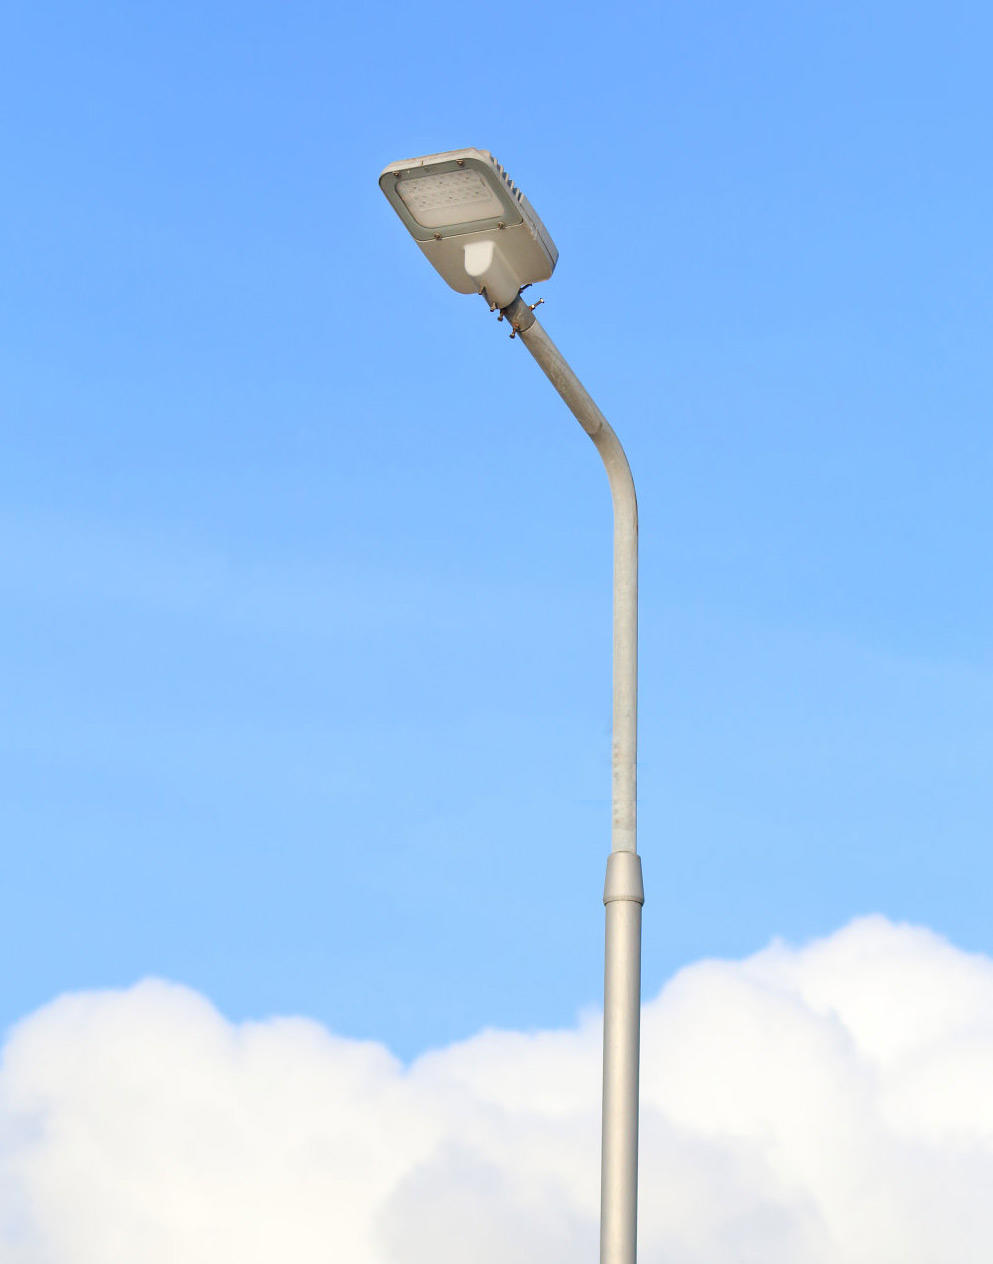 ALLTOP luminary customized 200w led street light company